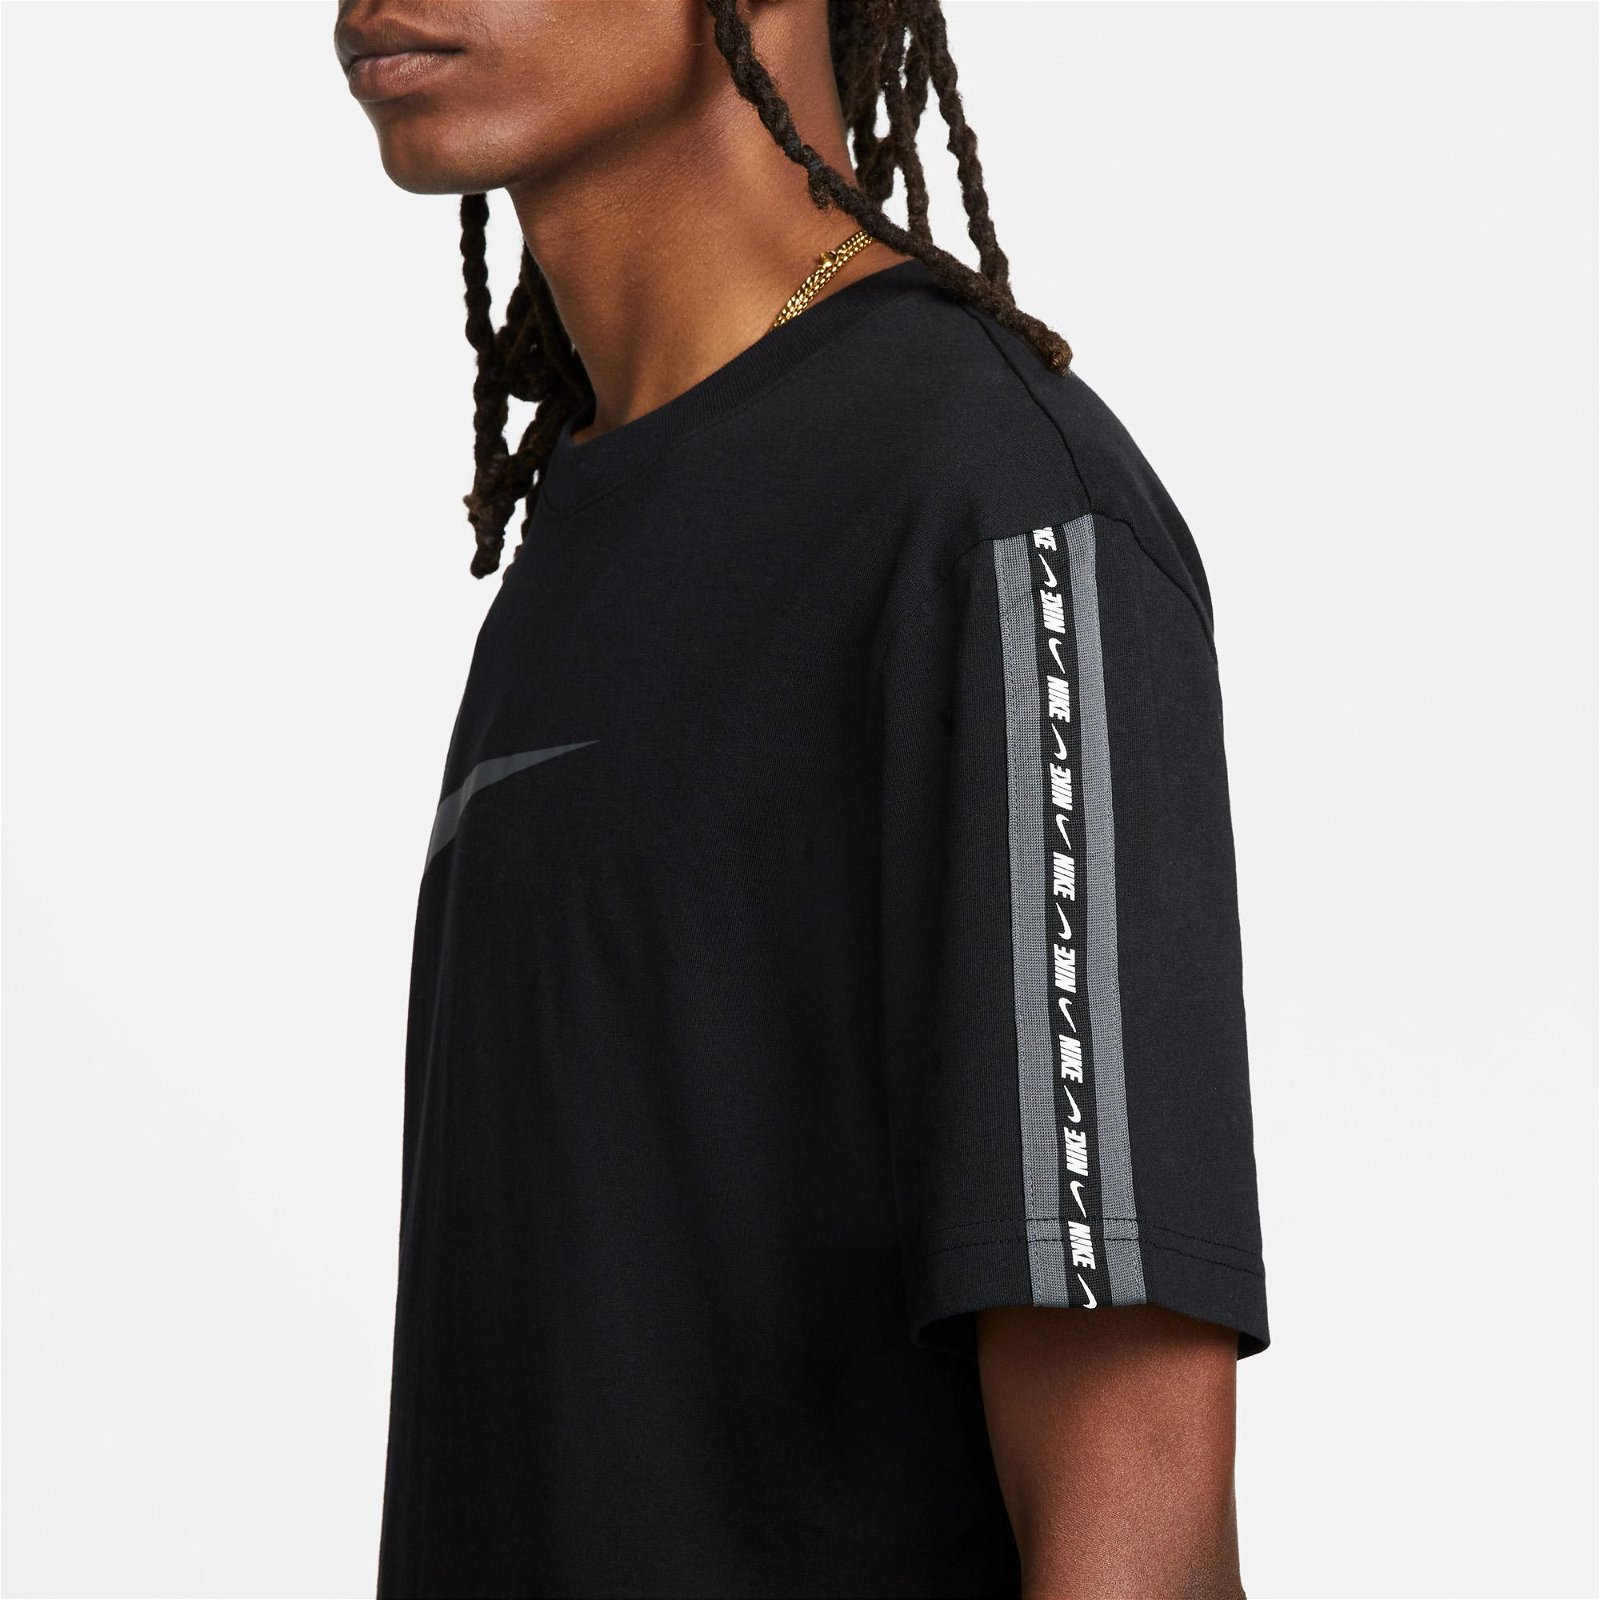 Nike Sportswear Repeat Swoosh Erkek Siyah T-Shirt